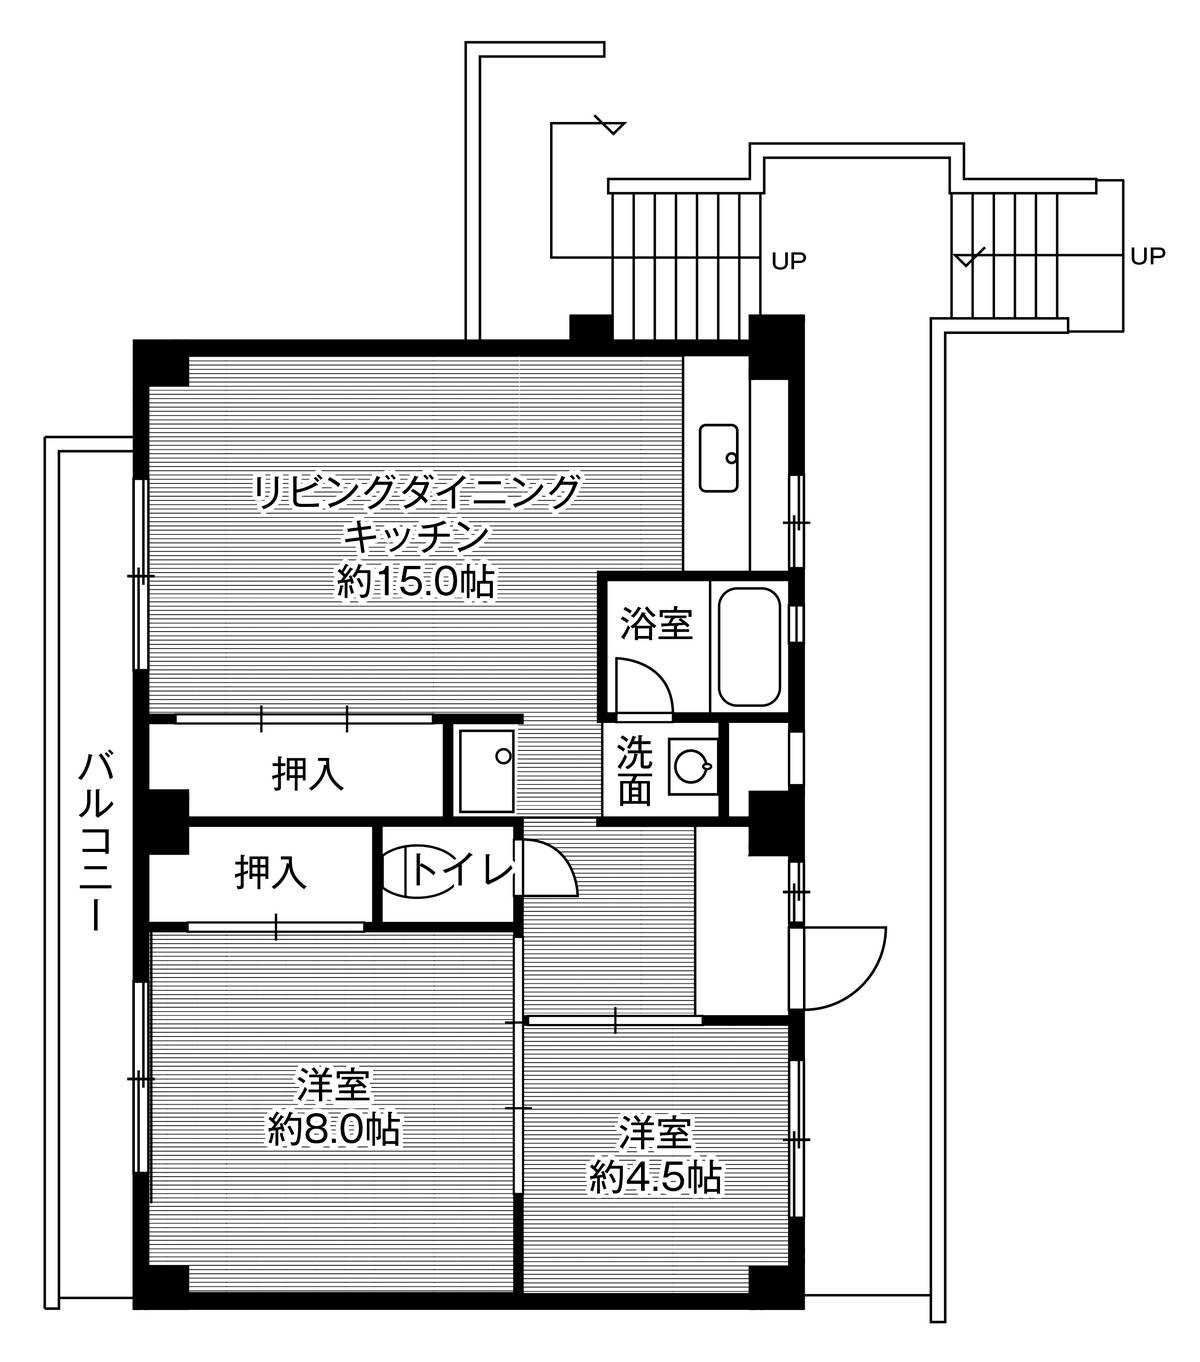 2LDK floorplan of Village House Shimogoi in Toyohashi-shi